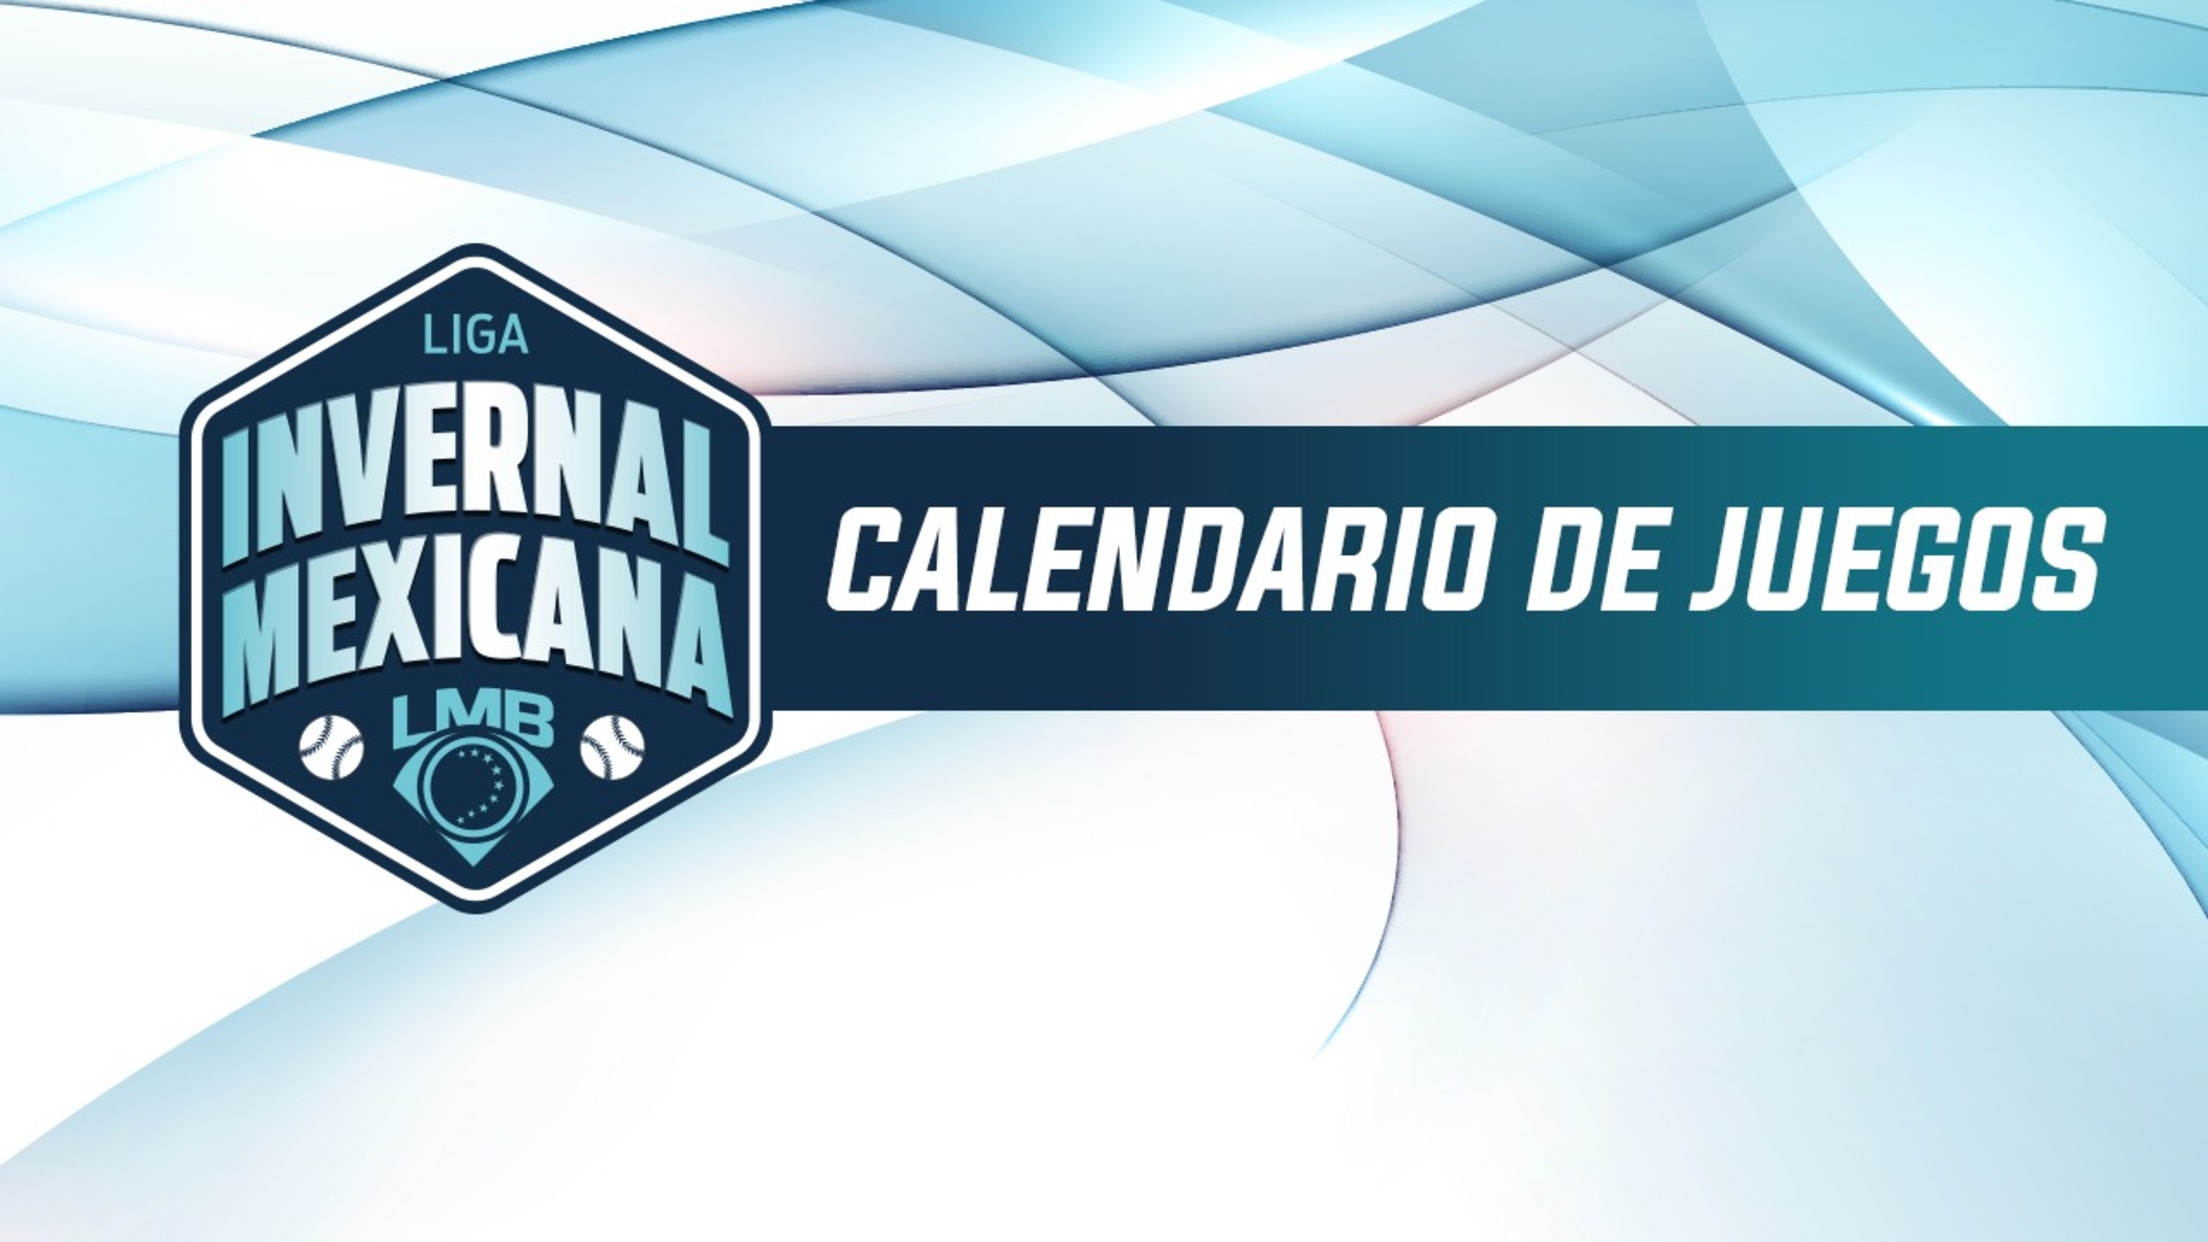 Liga Invernal Mexicana Mexican League